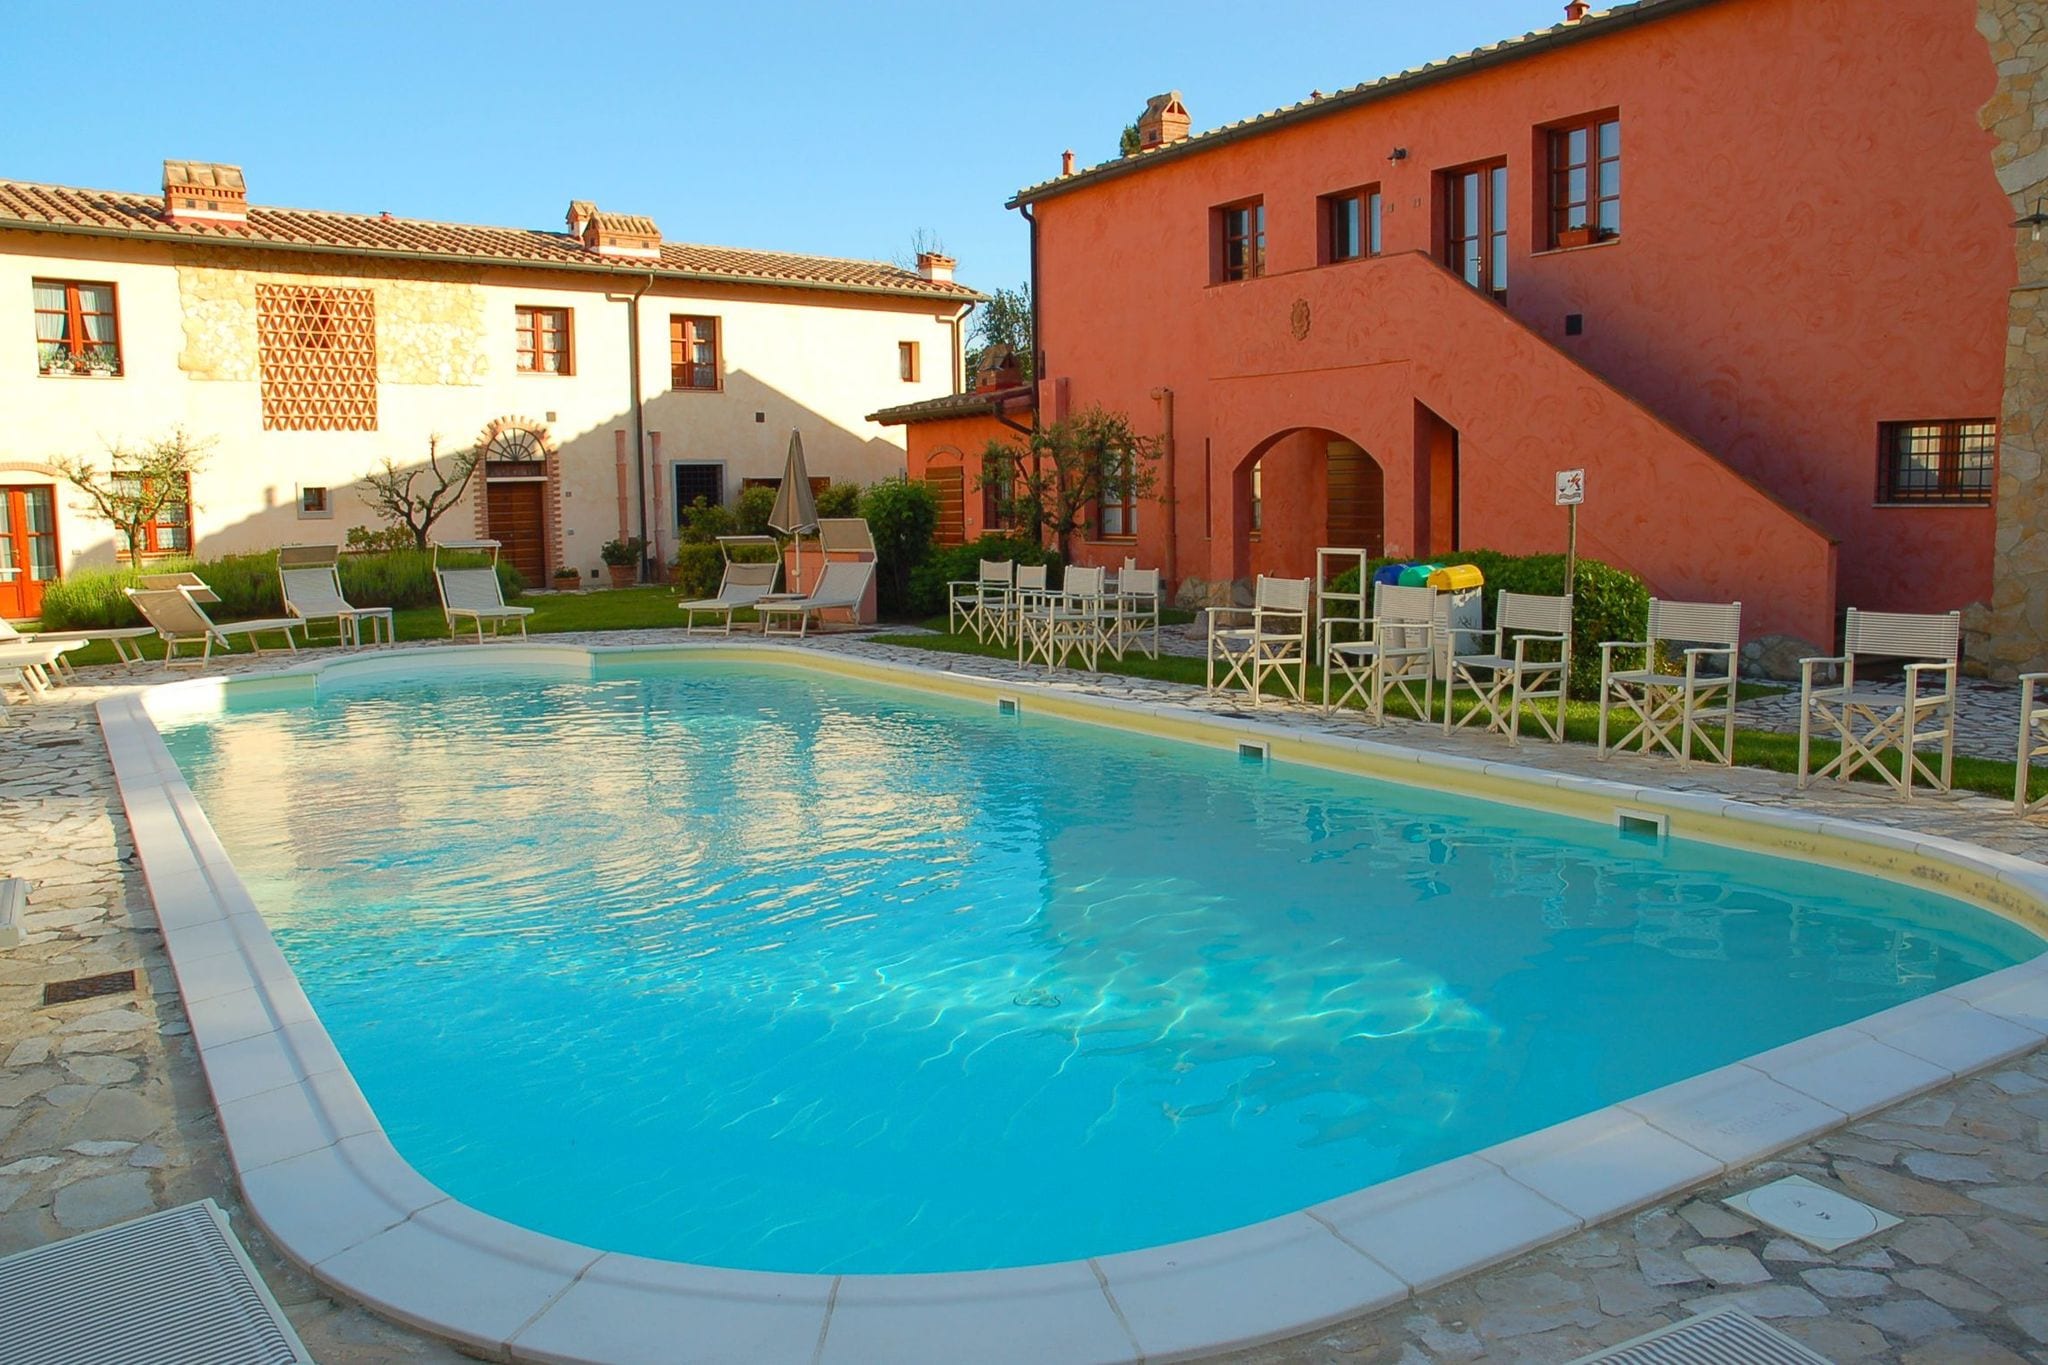 Vintage-Ferienhaus mit Swimmingpool in der Toskana